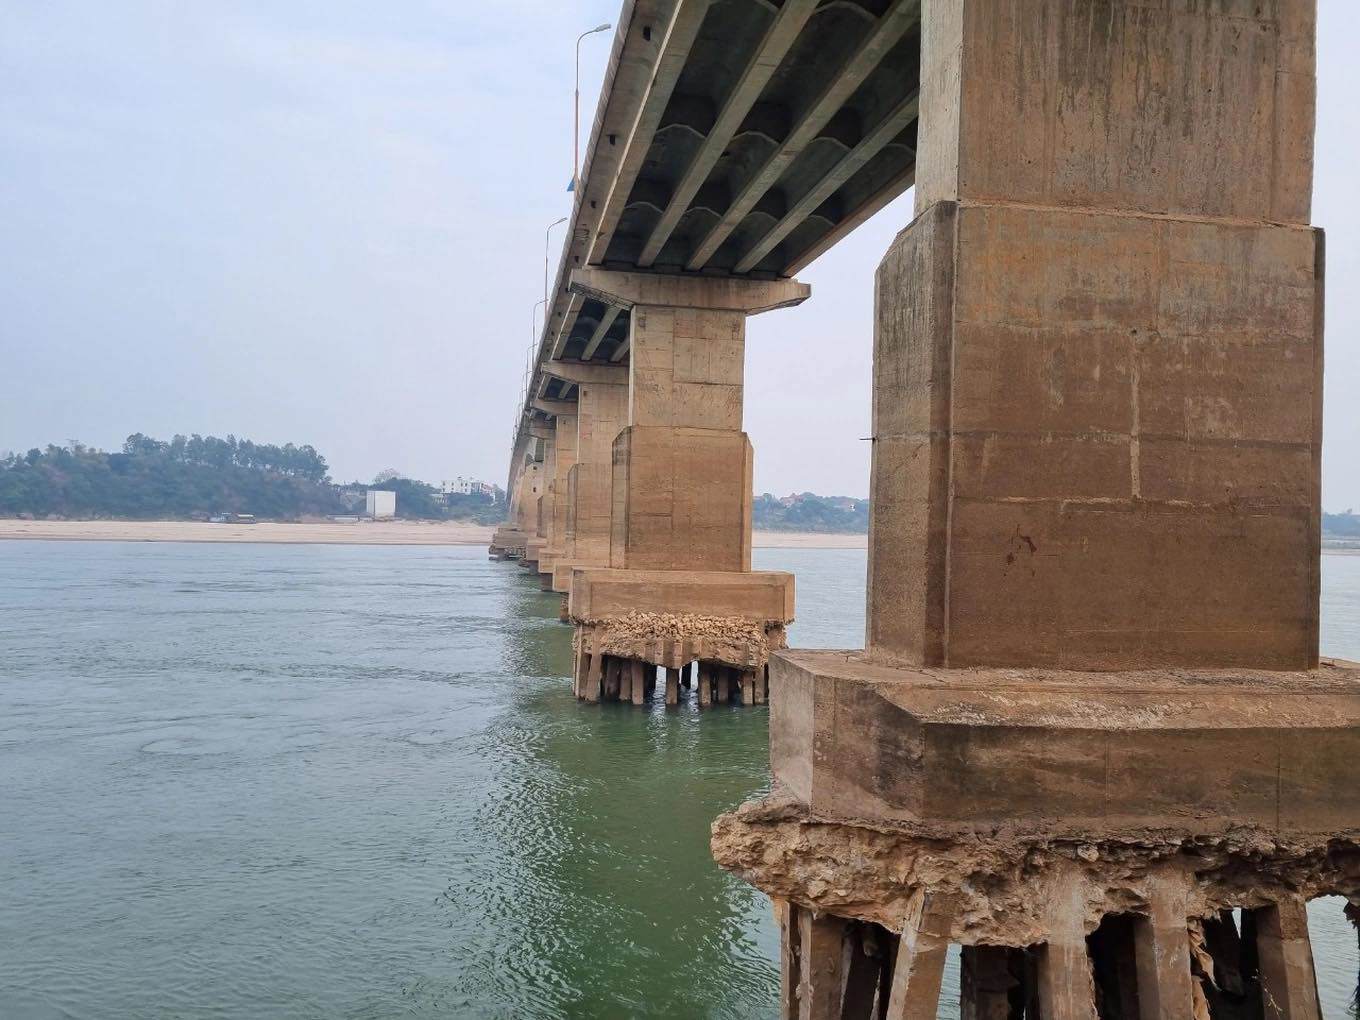 Cầu nối Hà Nội - Phú Thọ trơ trụ móng: Đề xuất phương án sửa chữa - 1